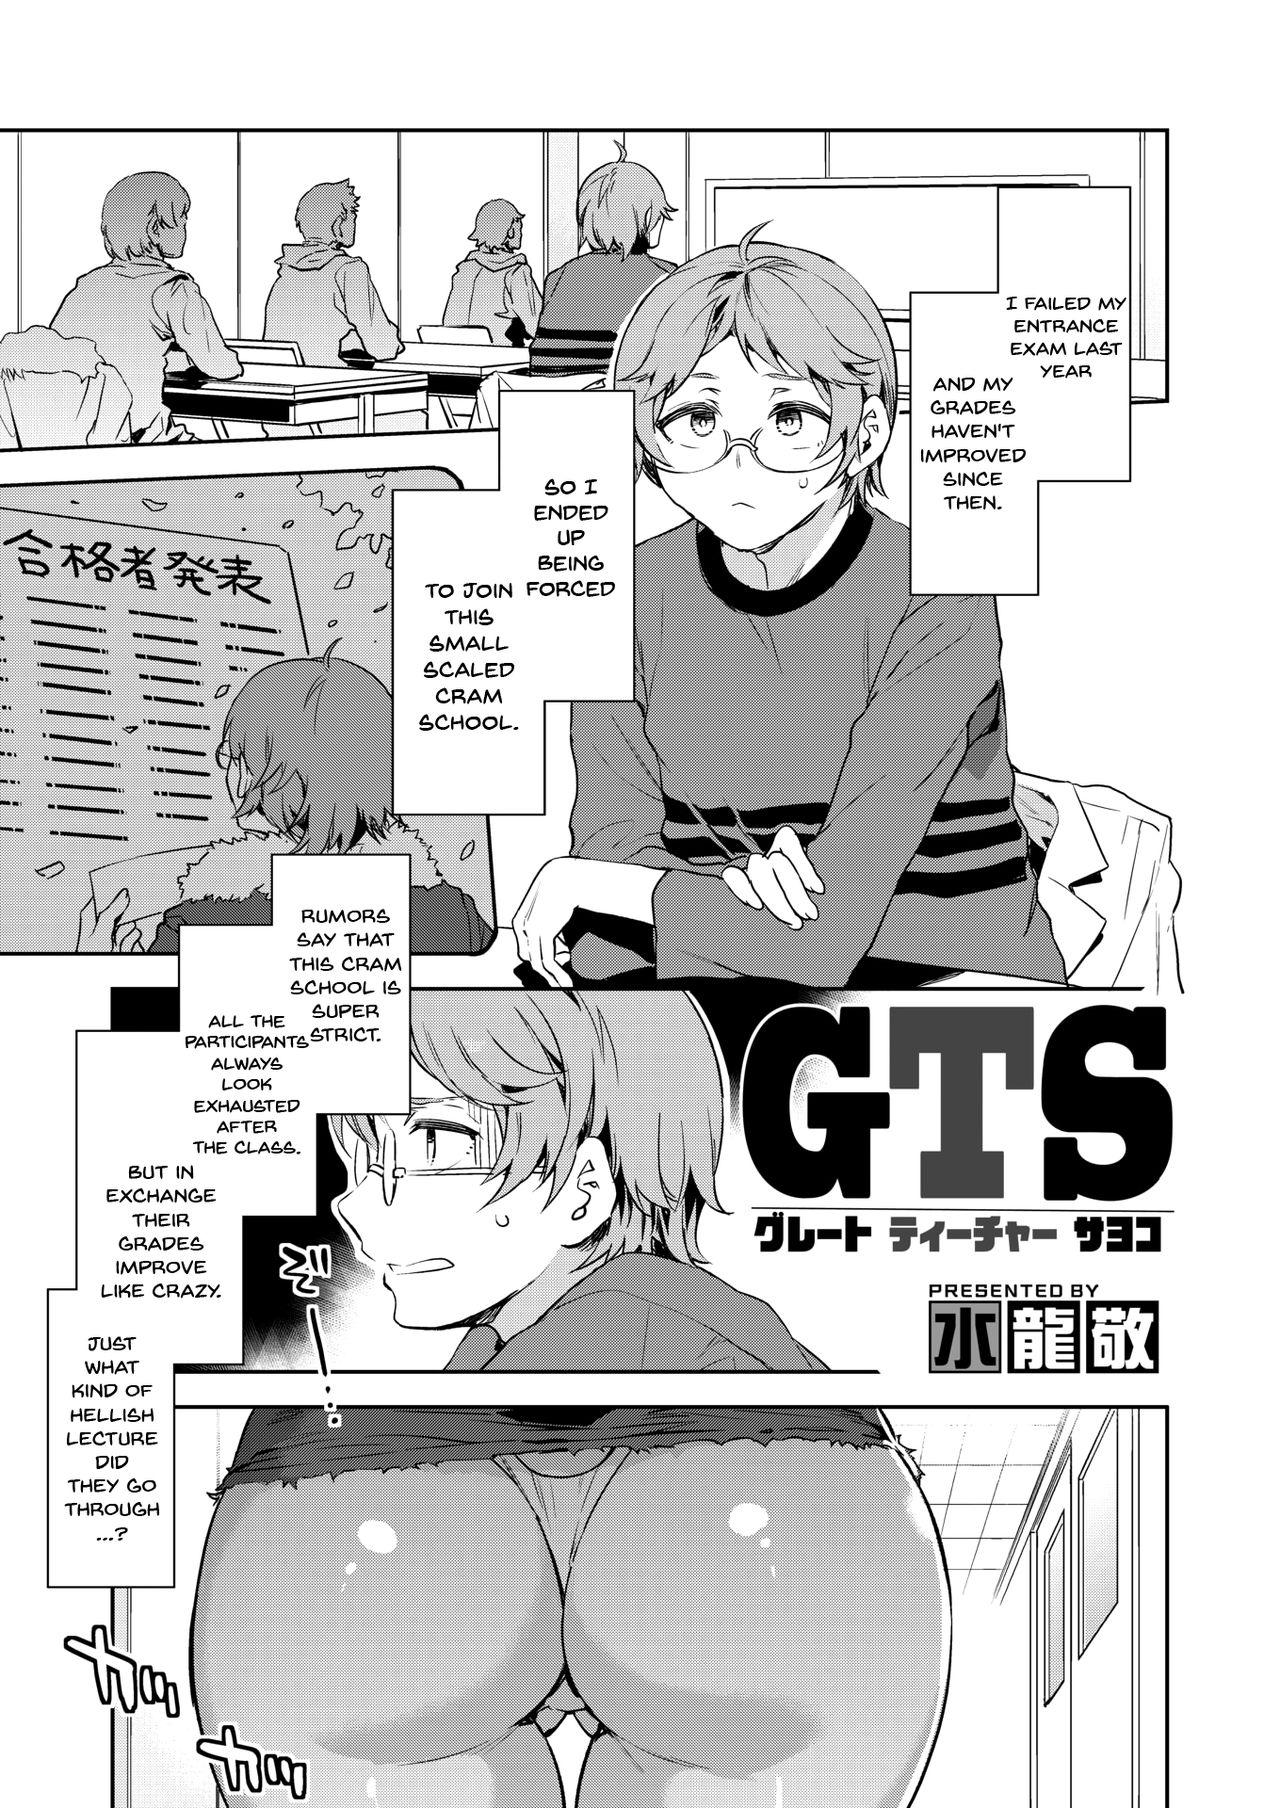 Old Man GTS | GTS - Great Teacher Sayoko Calcinha - Page 1